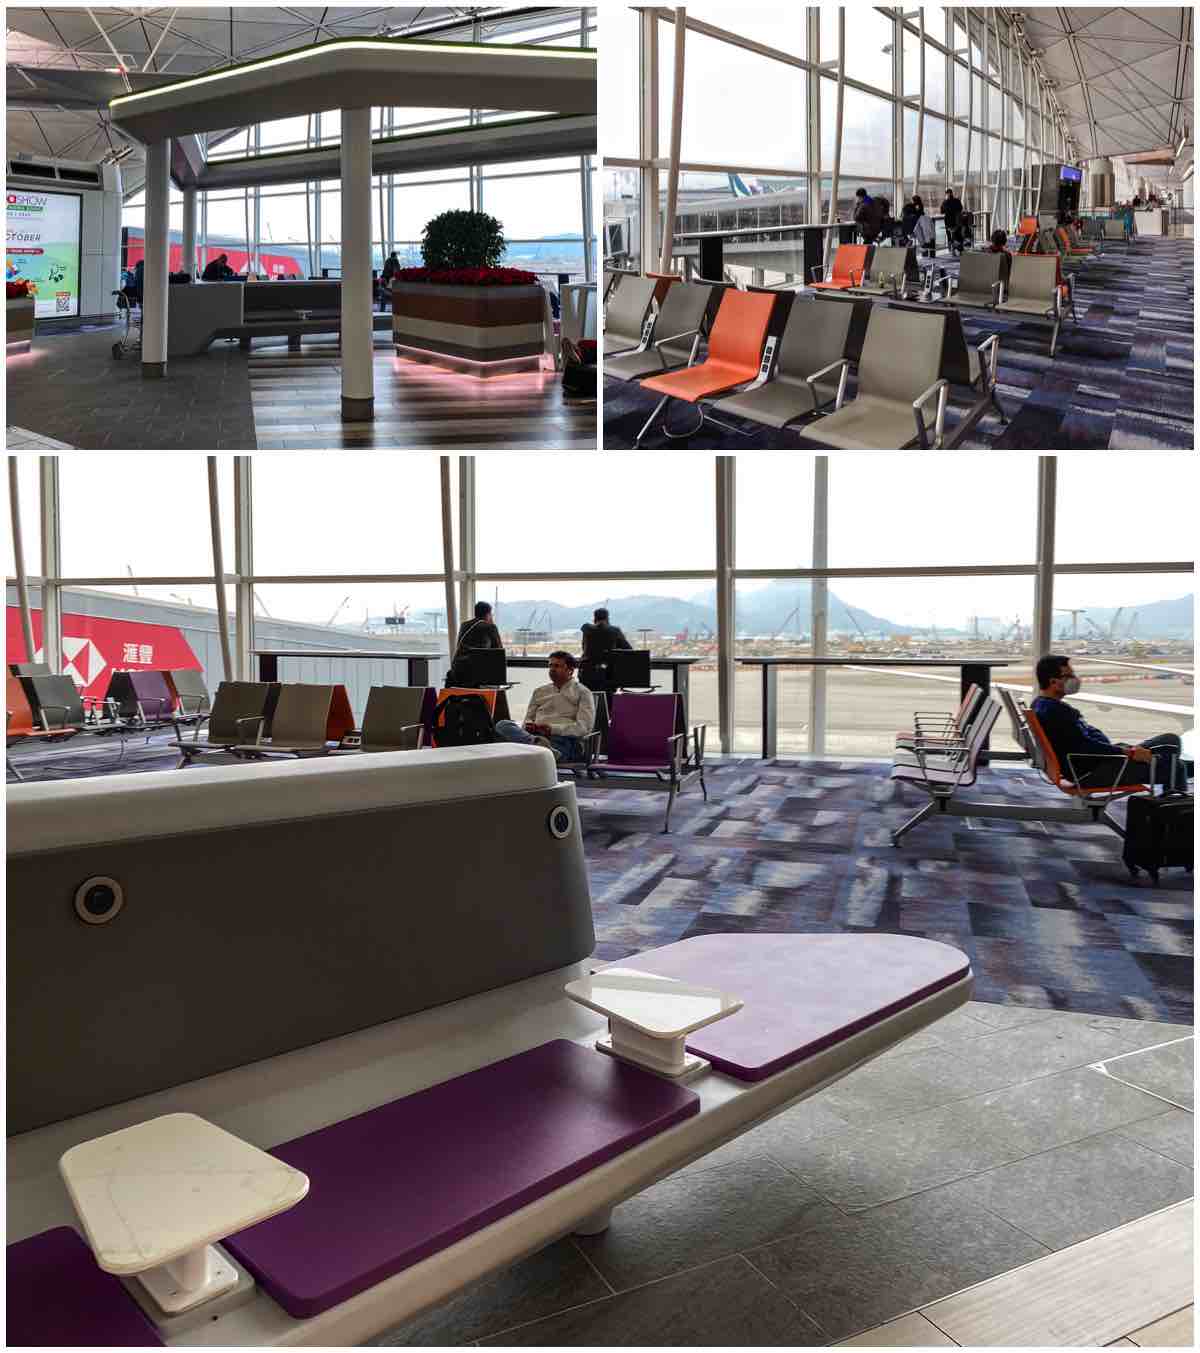 Hong Kong airport terminal 1 seating areas